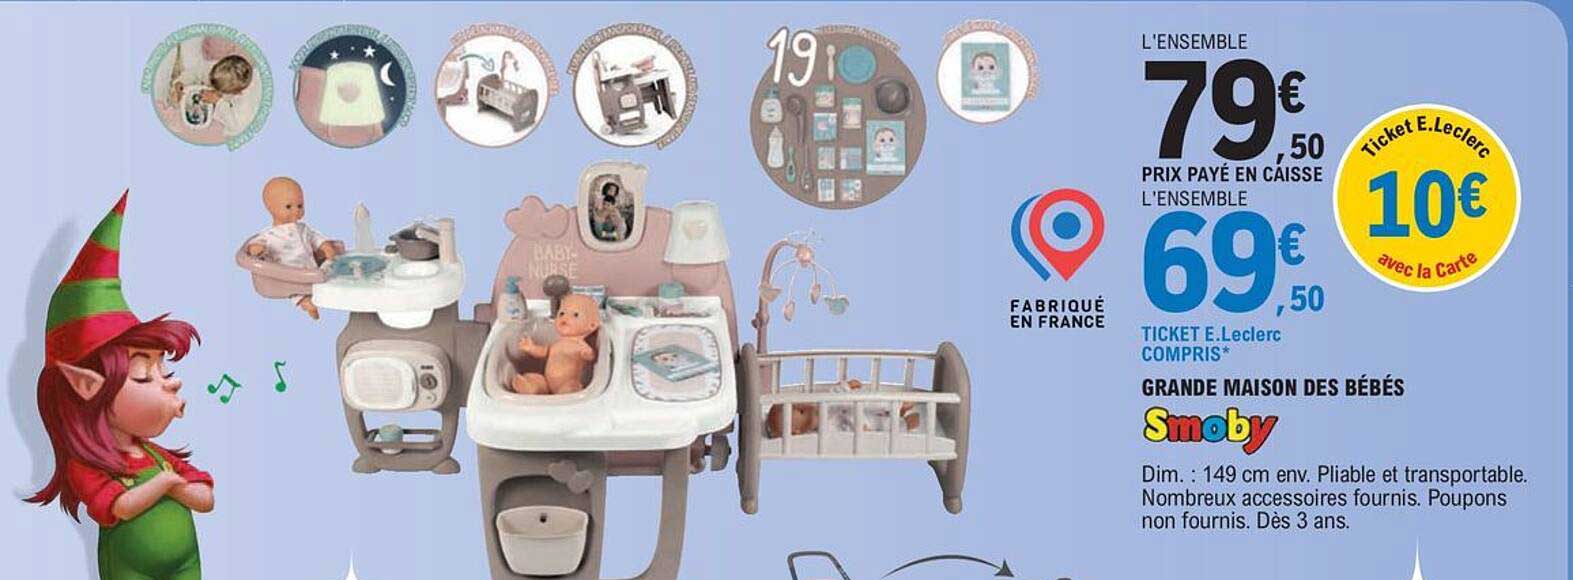 SMOBY - Grande maison des bébés Baby Nurse - Dès 3 ans - Super U